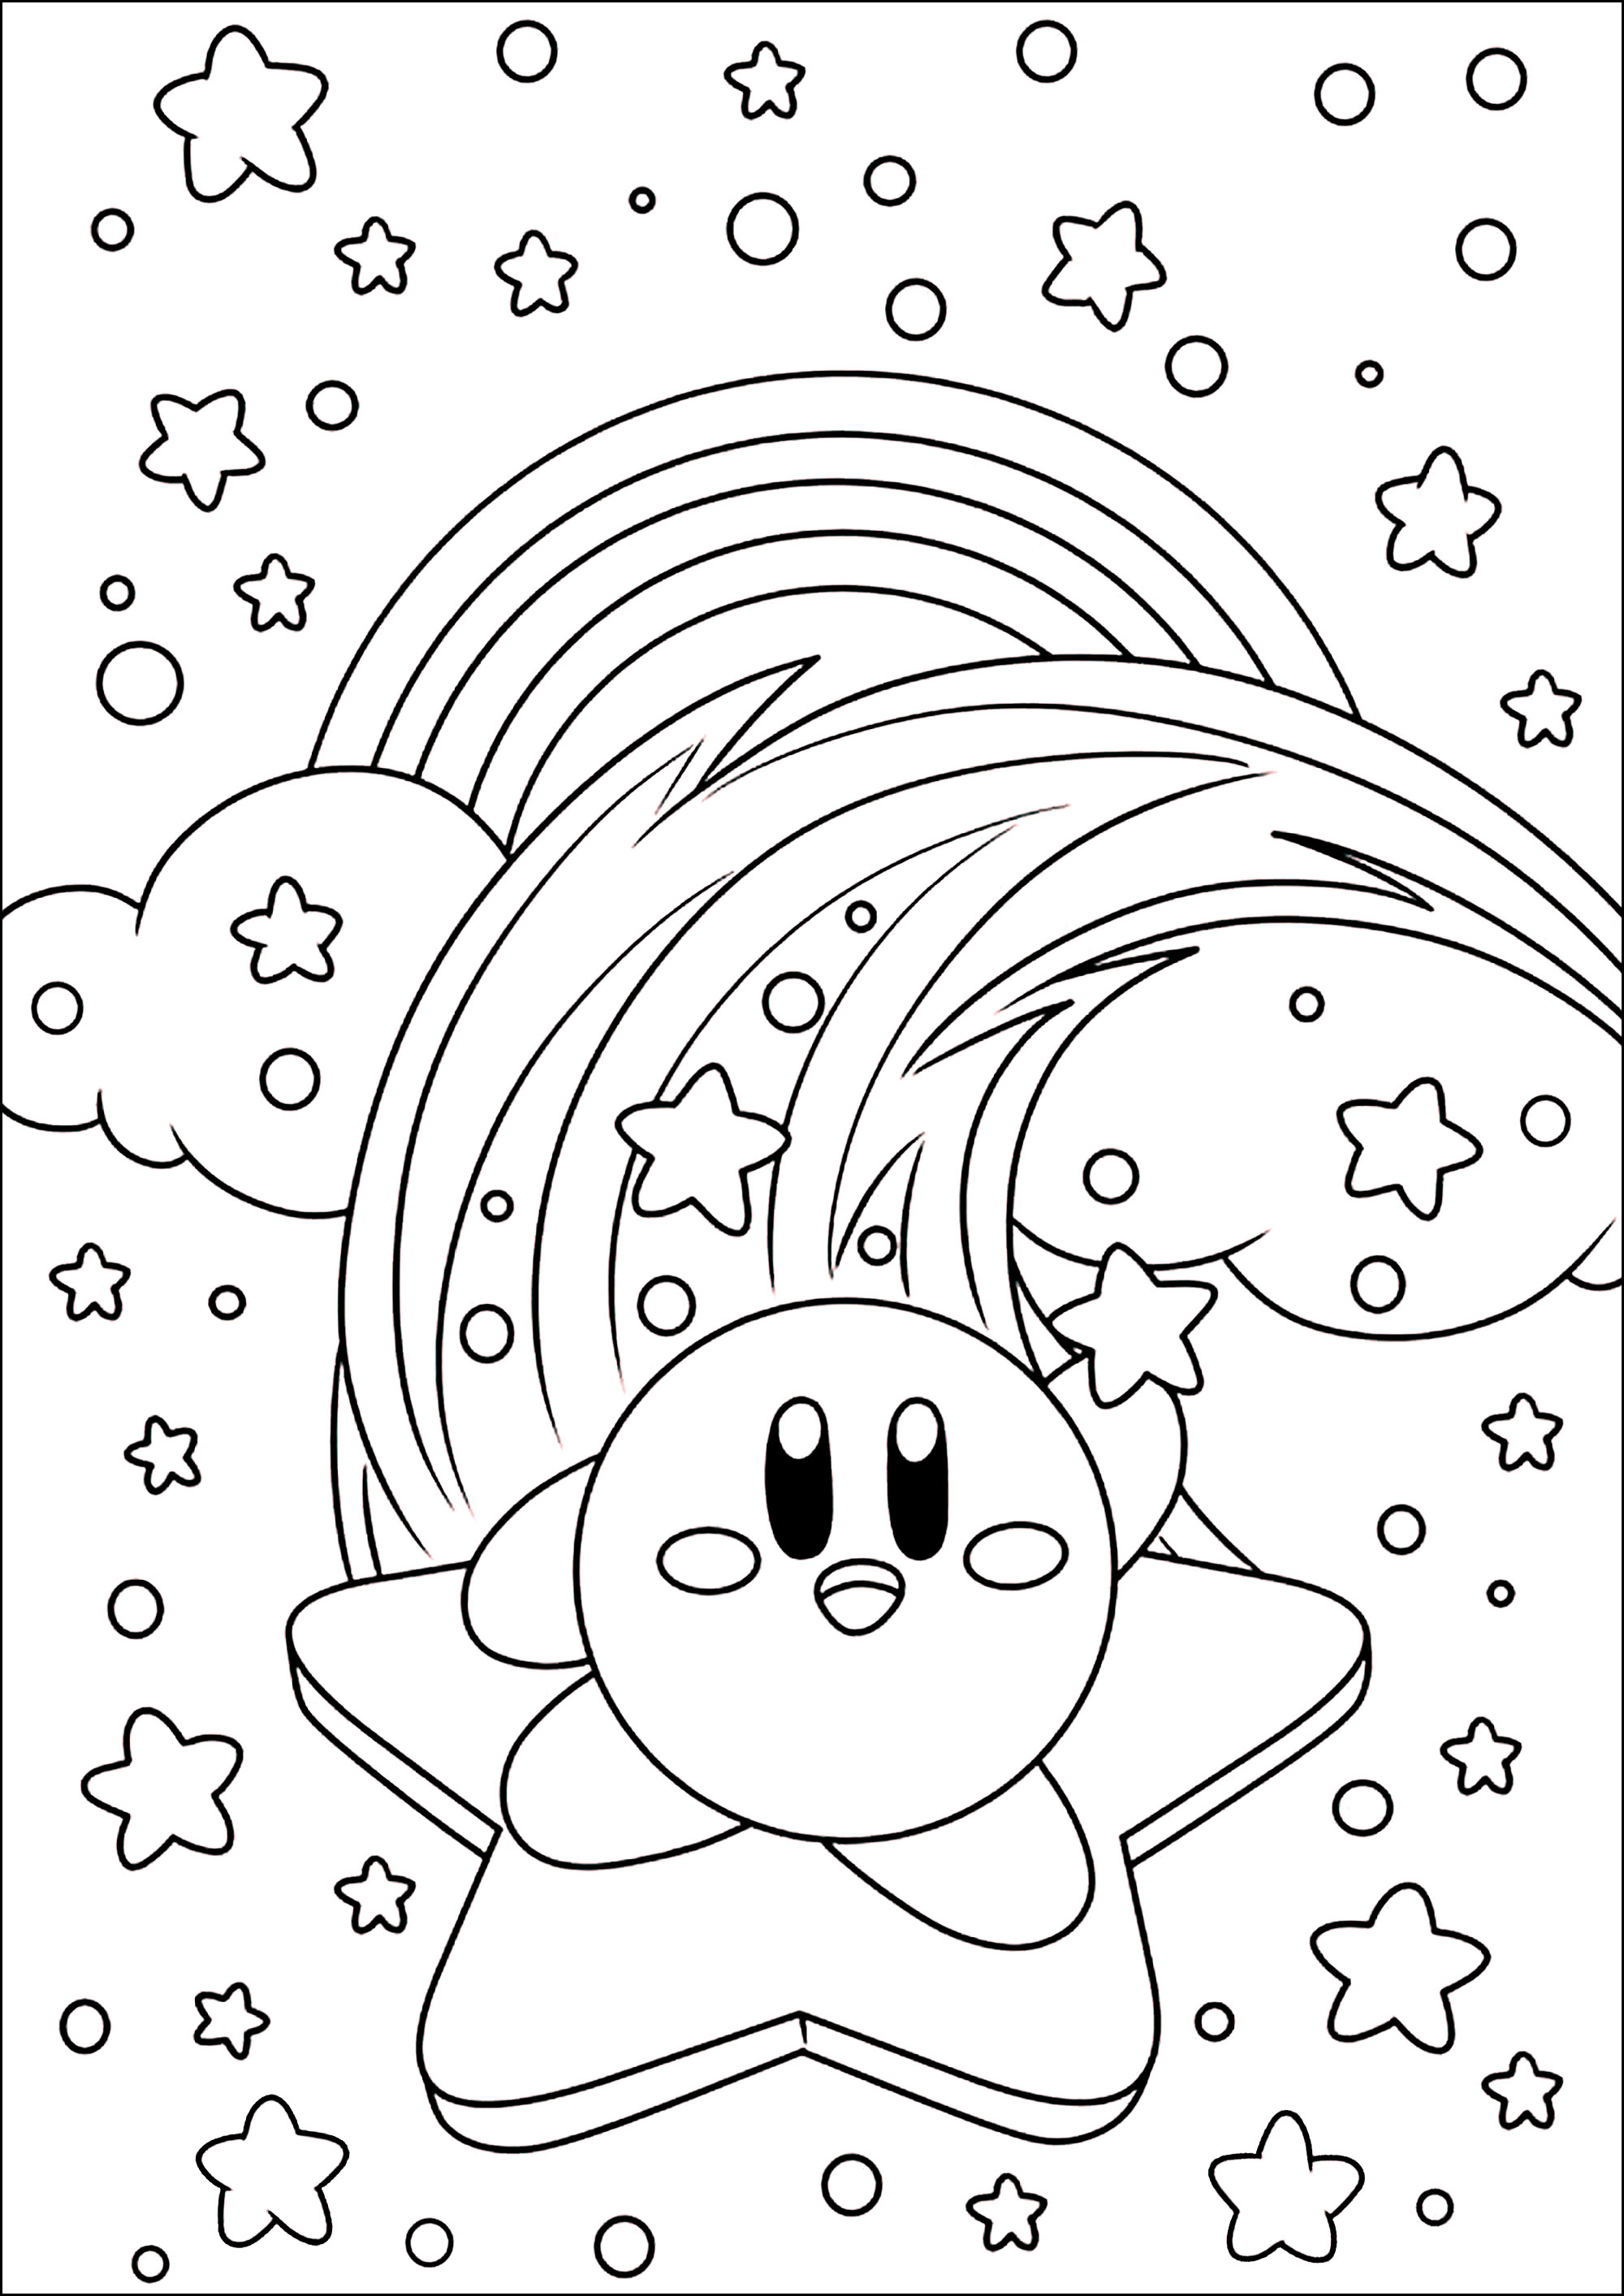 Kirby numa estrela no céu com nuvens e arco-íris. Kirby (カービィ, Kābī, pronunciado em japonês: [kaːbiː]) é um personagem de videojogos, criado por Masahiro Sakurai para a empresa Nintendo. É uma pequena bola cor-de-rosa do planeta Popstar que suga os seus inimigos para 'copiar' os seus poderes.